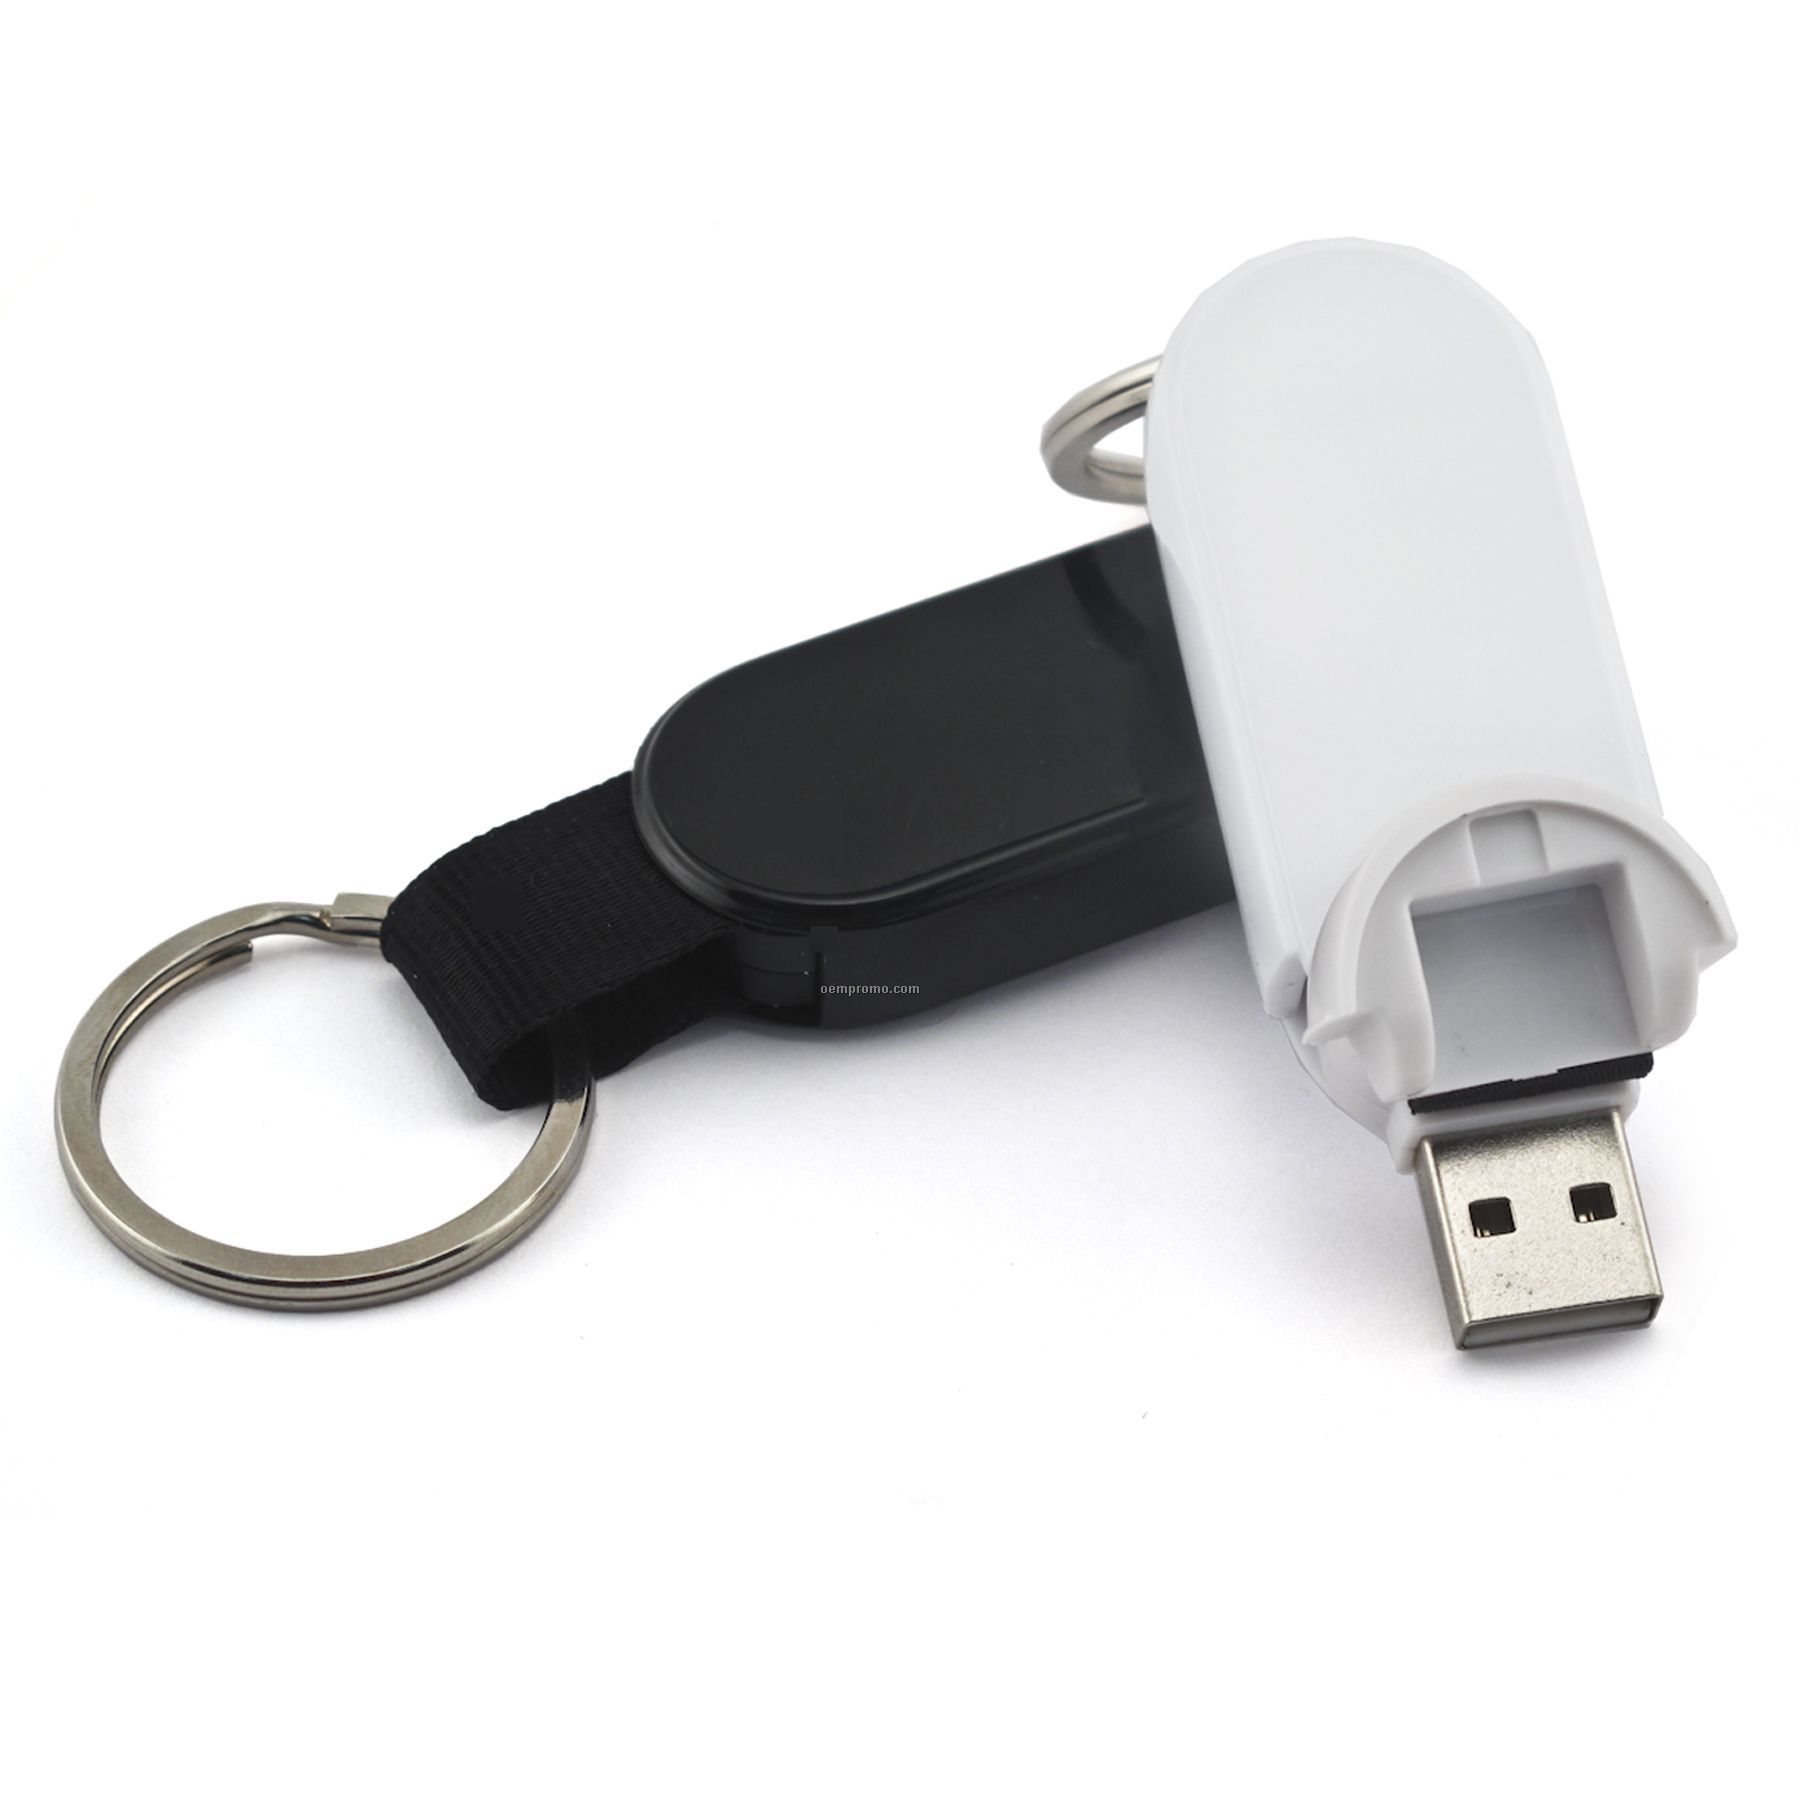 1 Gb Retractable USB Drive 700 Series